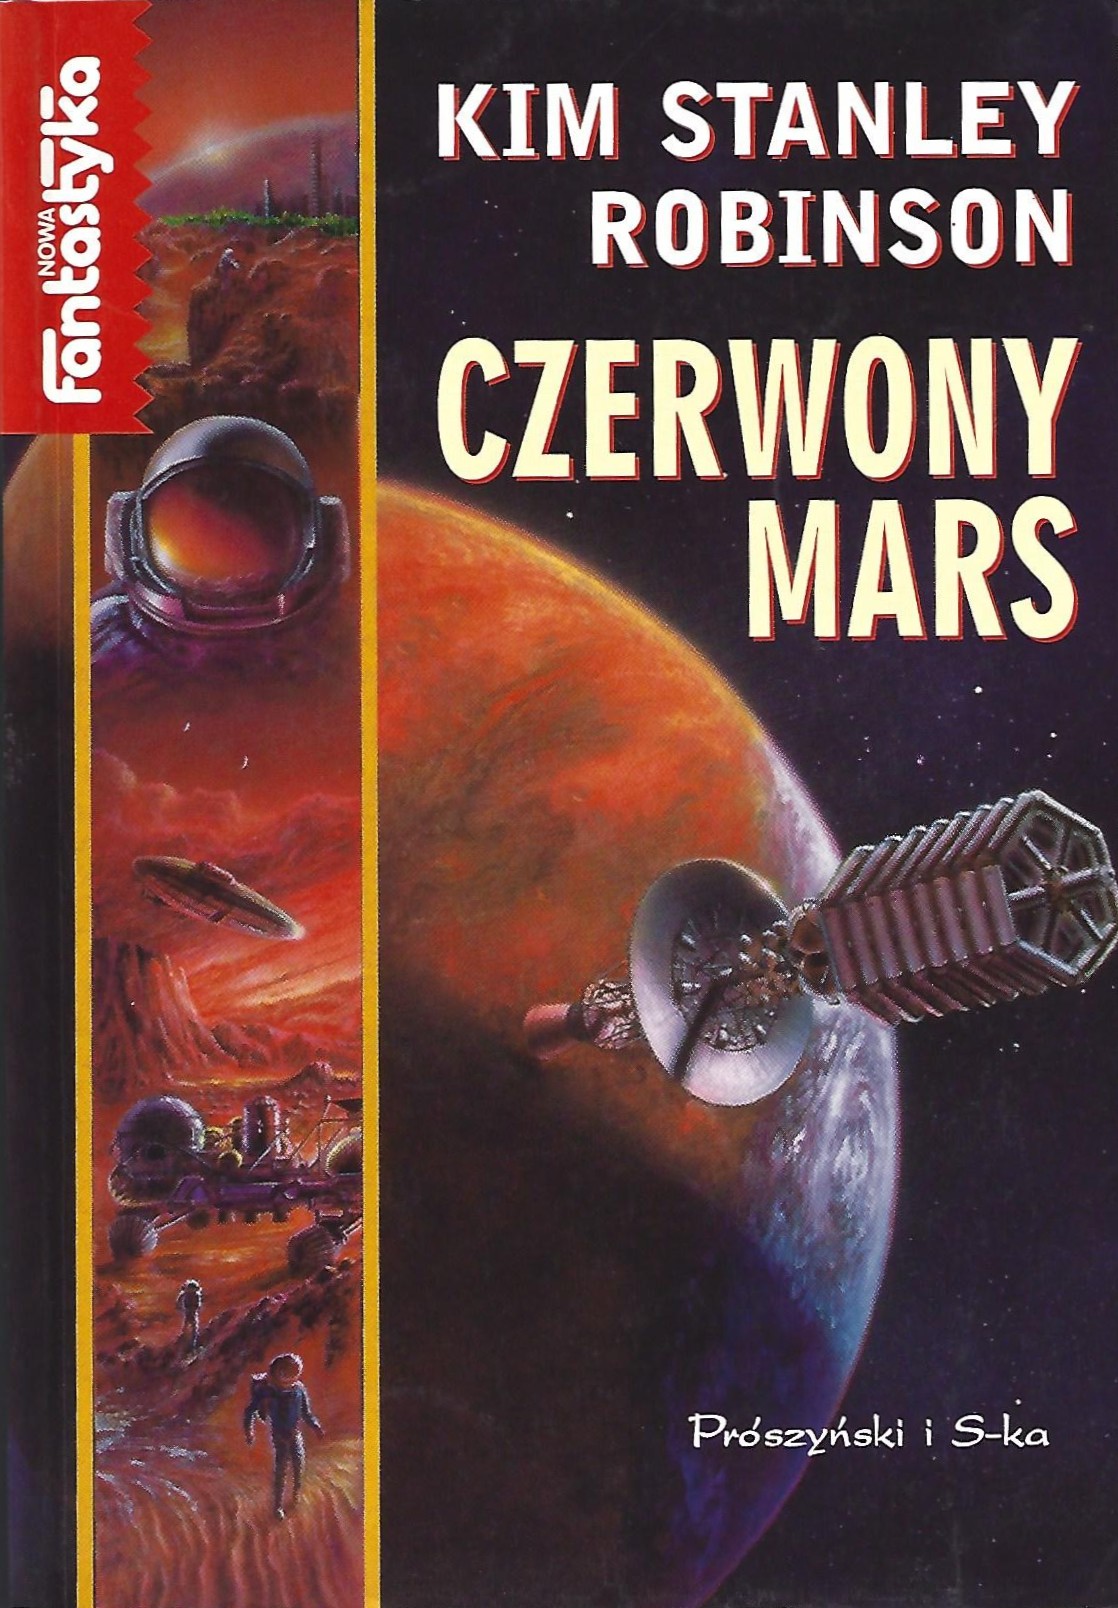 Książka pt. "Czerwony Mars"